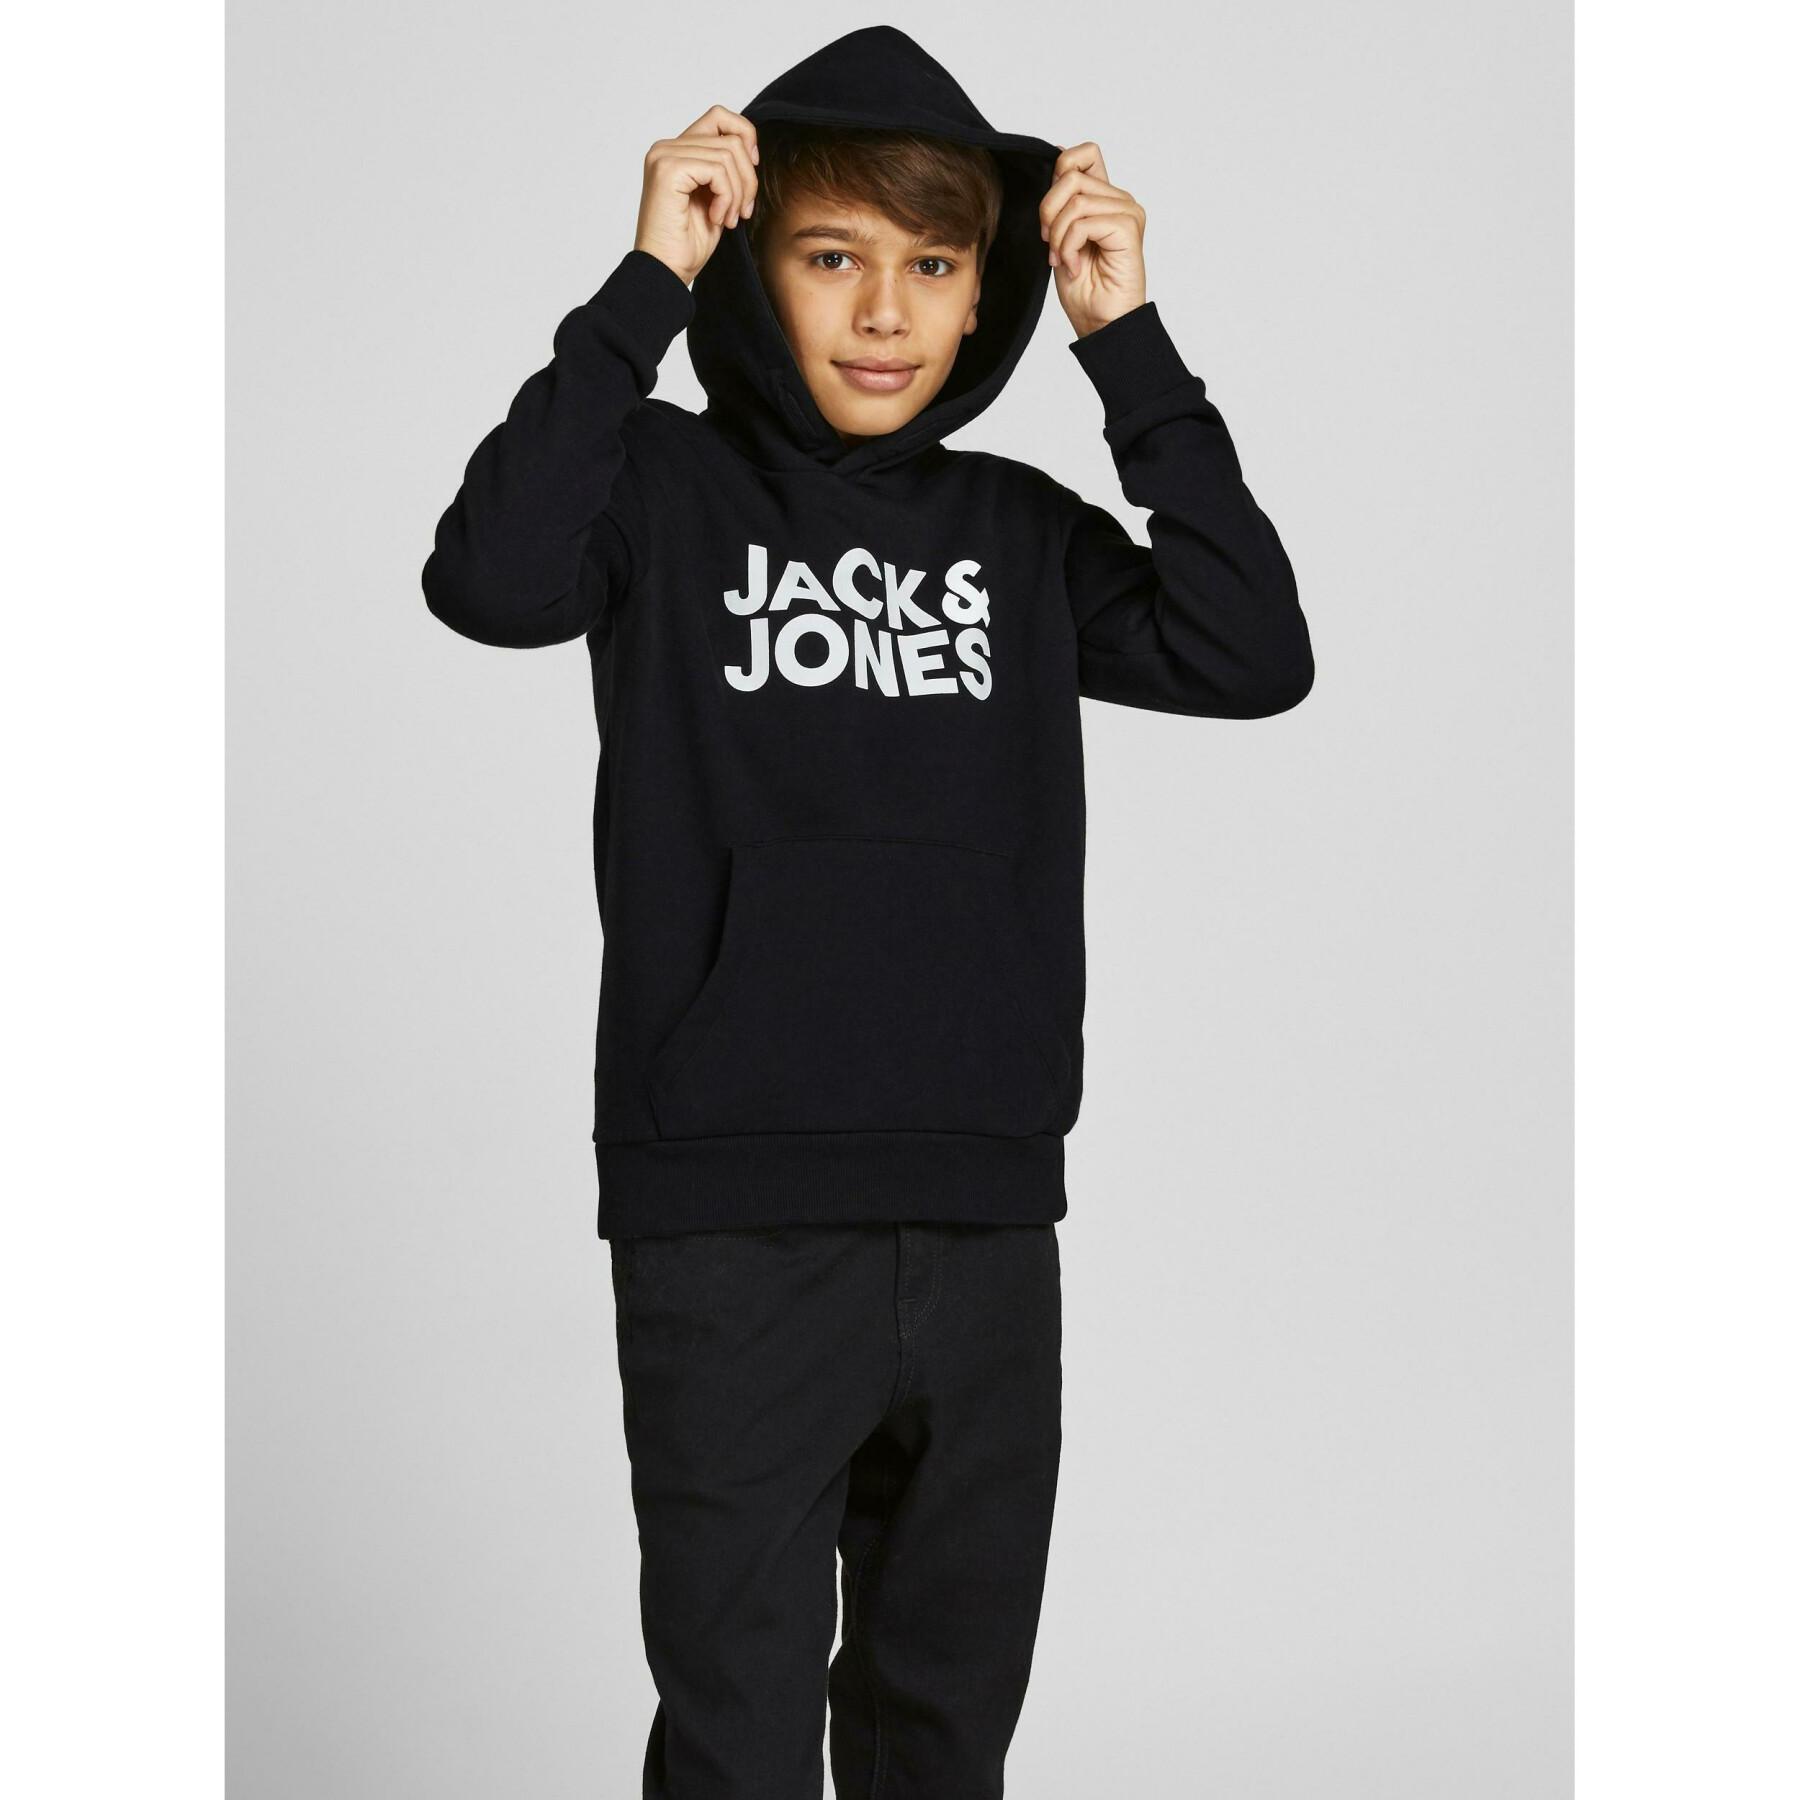 Zestaw 2 bluz dziecięcych z kapturem Jack & Jones corp logo